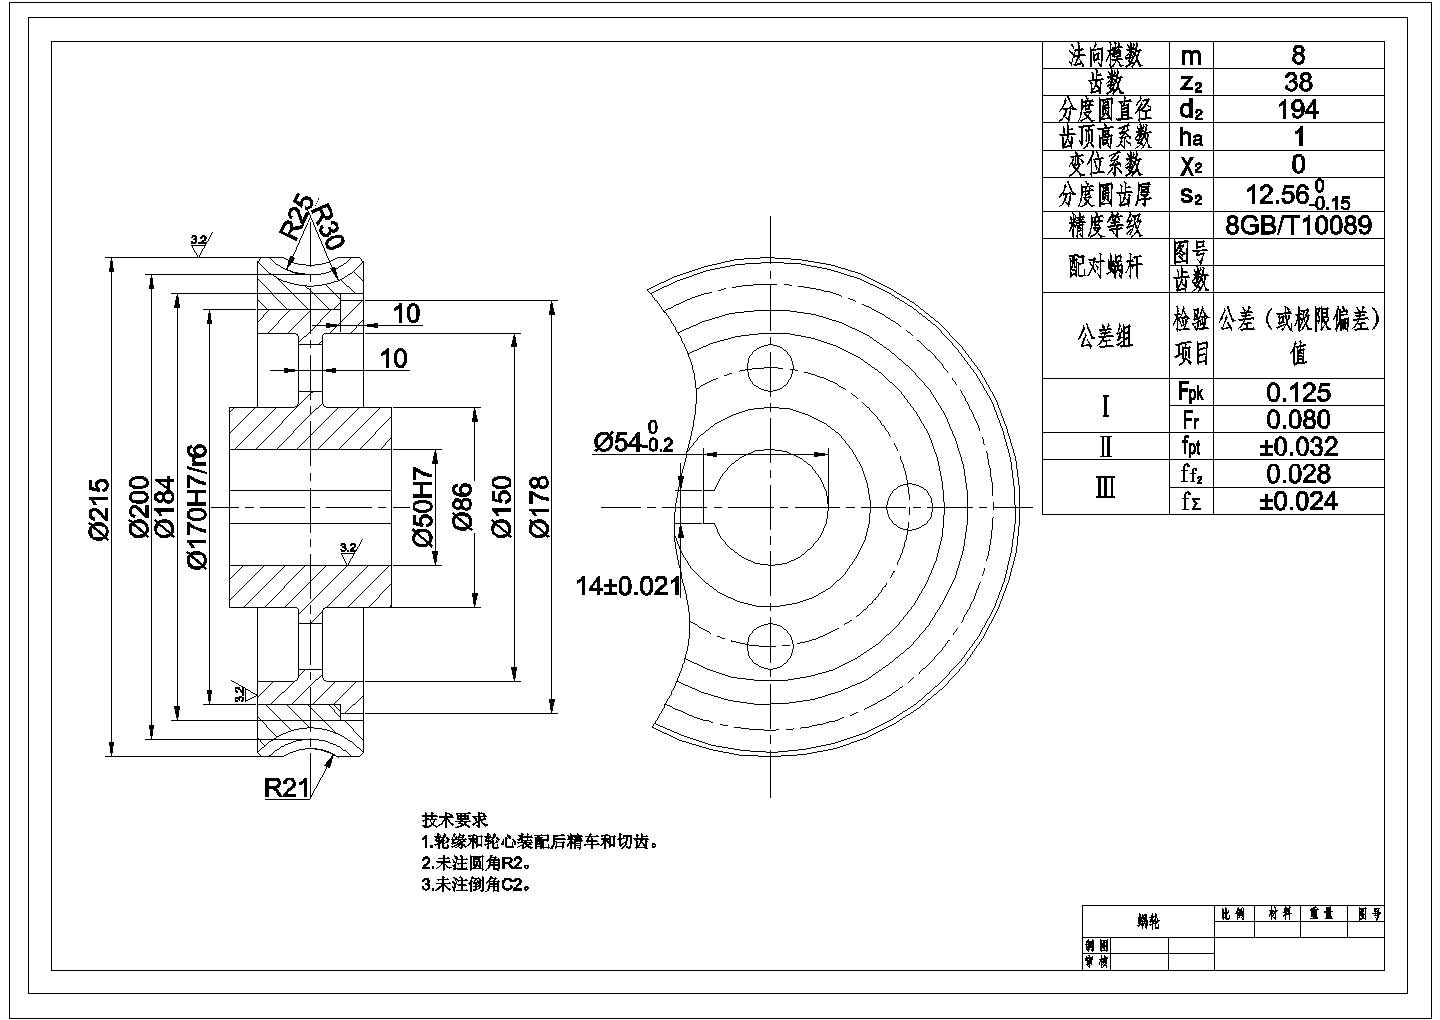 某蜗轮CAD构造设计节点图纸